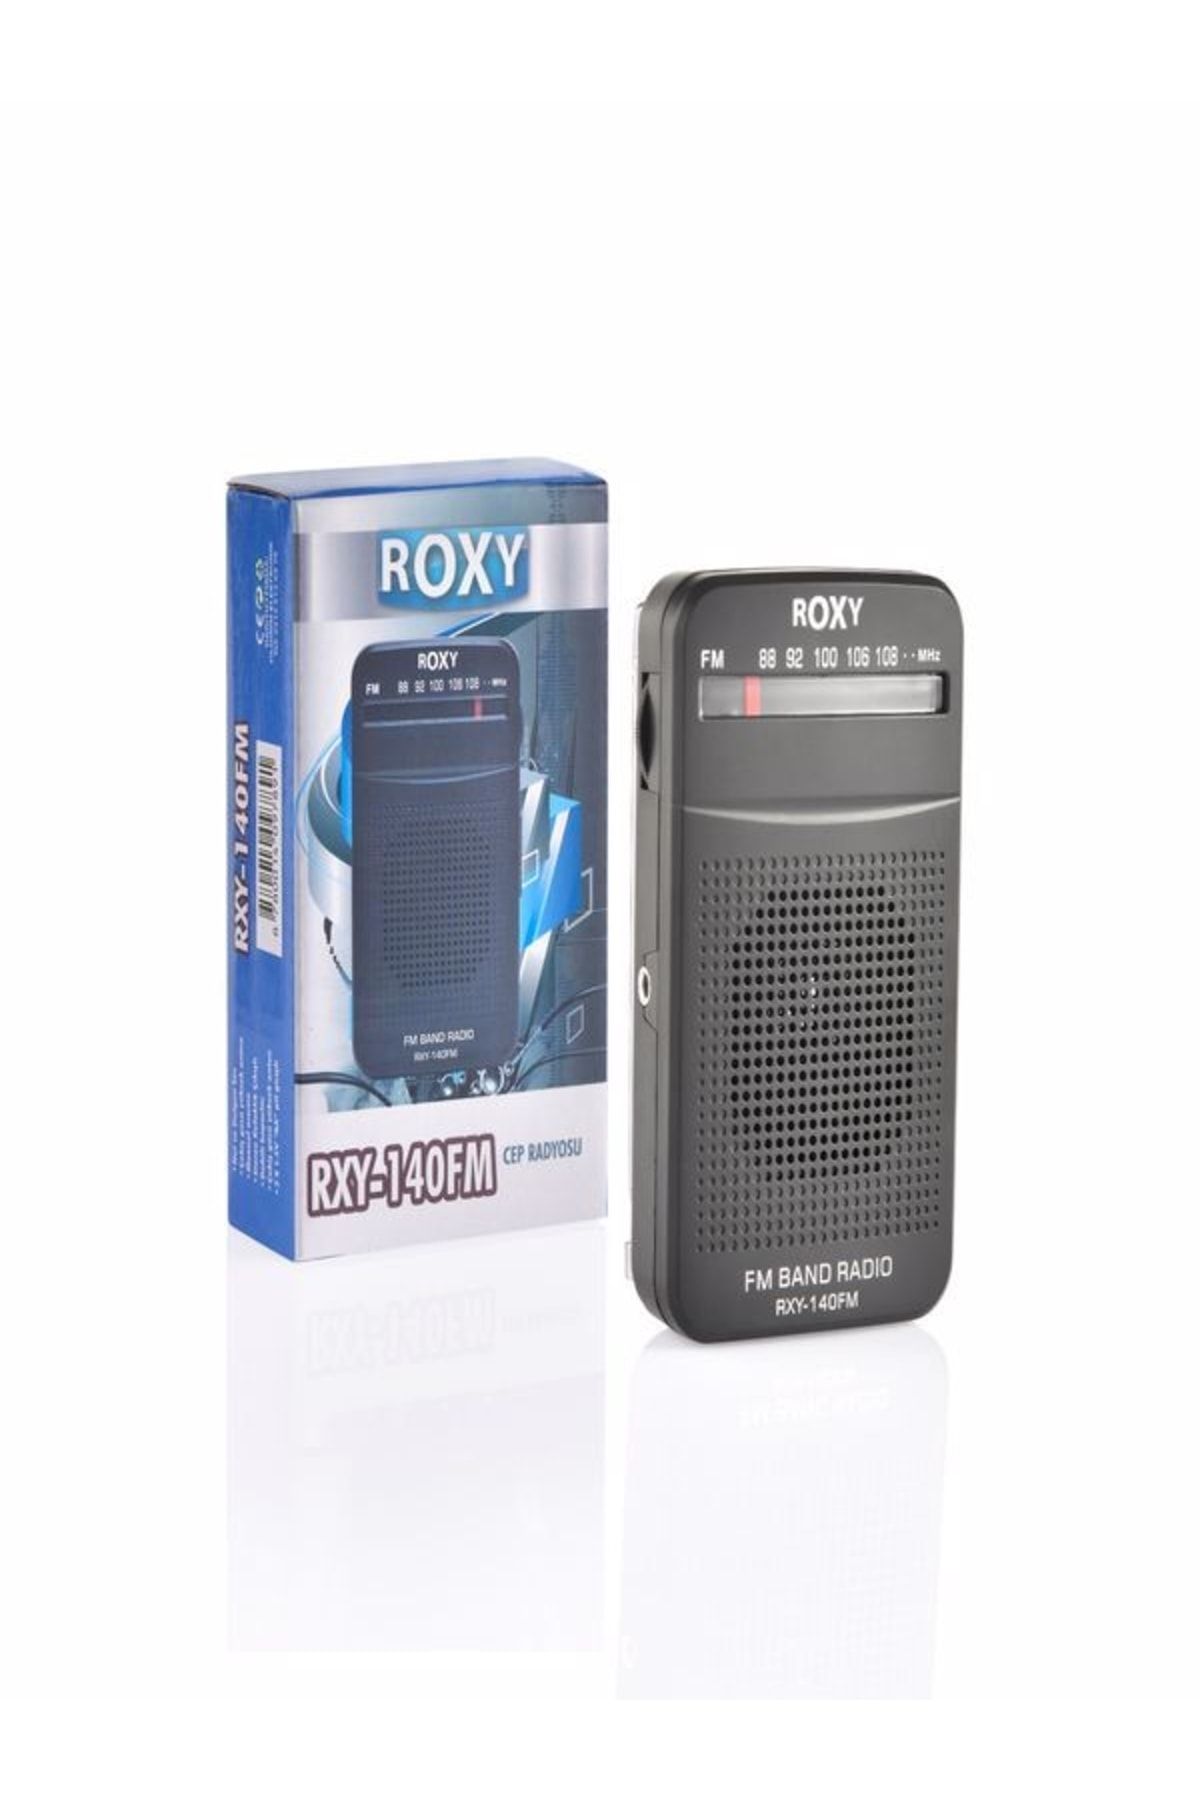 Roxy Rxy-140fm Cep Radyosu - Deprem Çantasına Uygun Taşınabilir Radyo